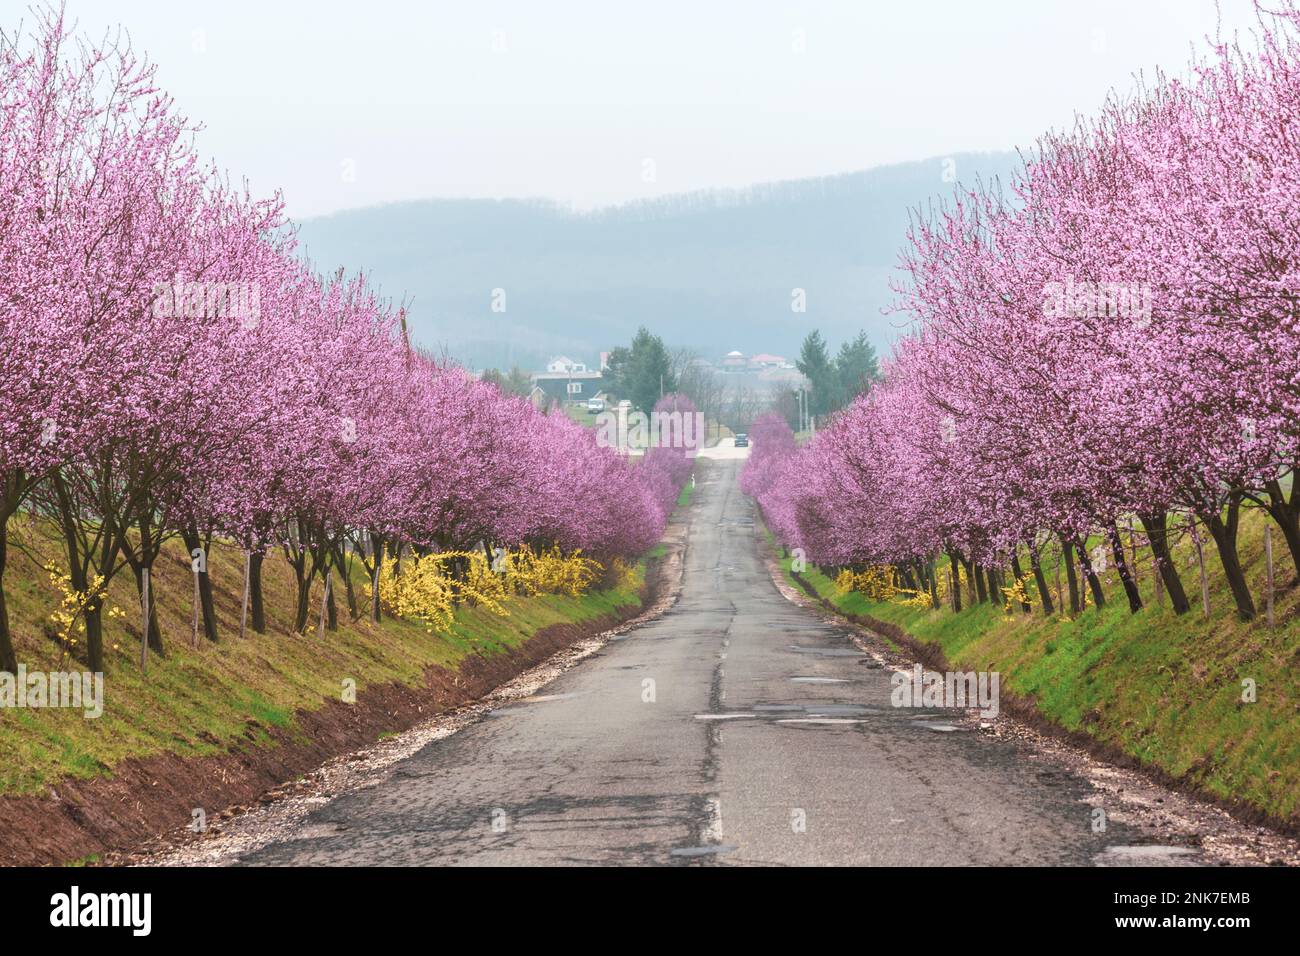 Une rangée de pruniers de sang aux fleurs merveilleuses Prunus cerasifera ‘Woodii’ au printemps, Berkenye, Hongrie Banque D'Images